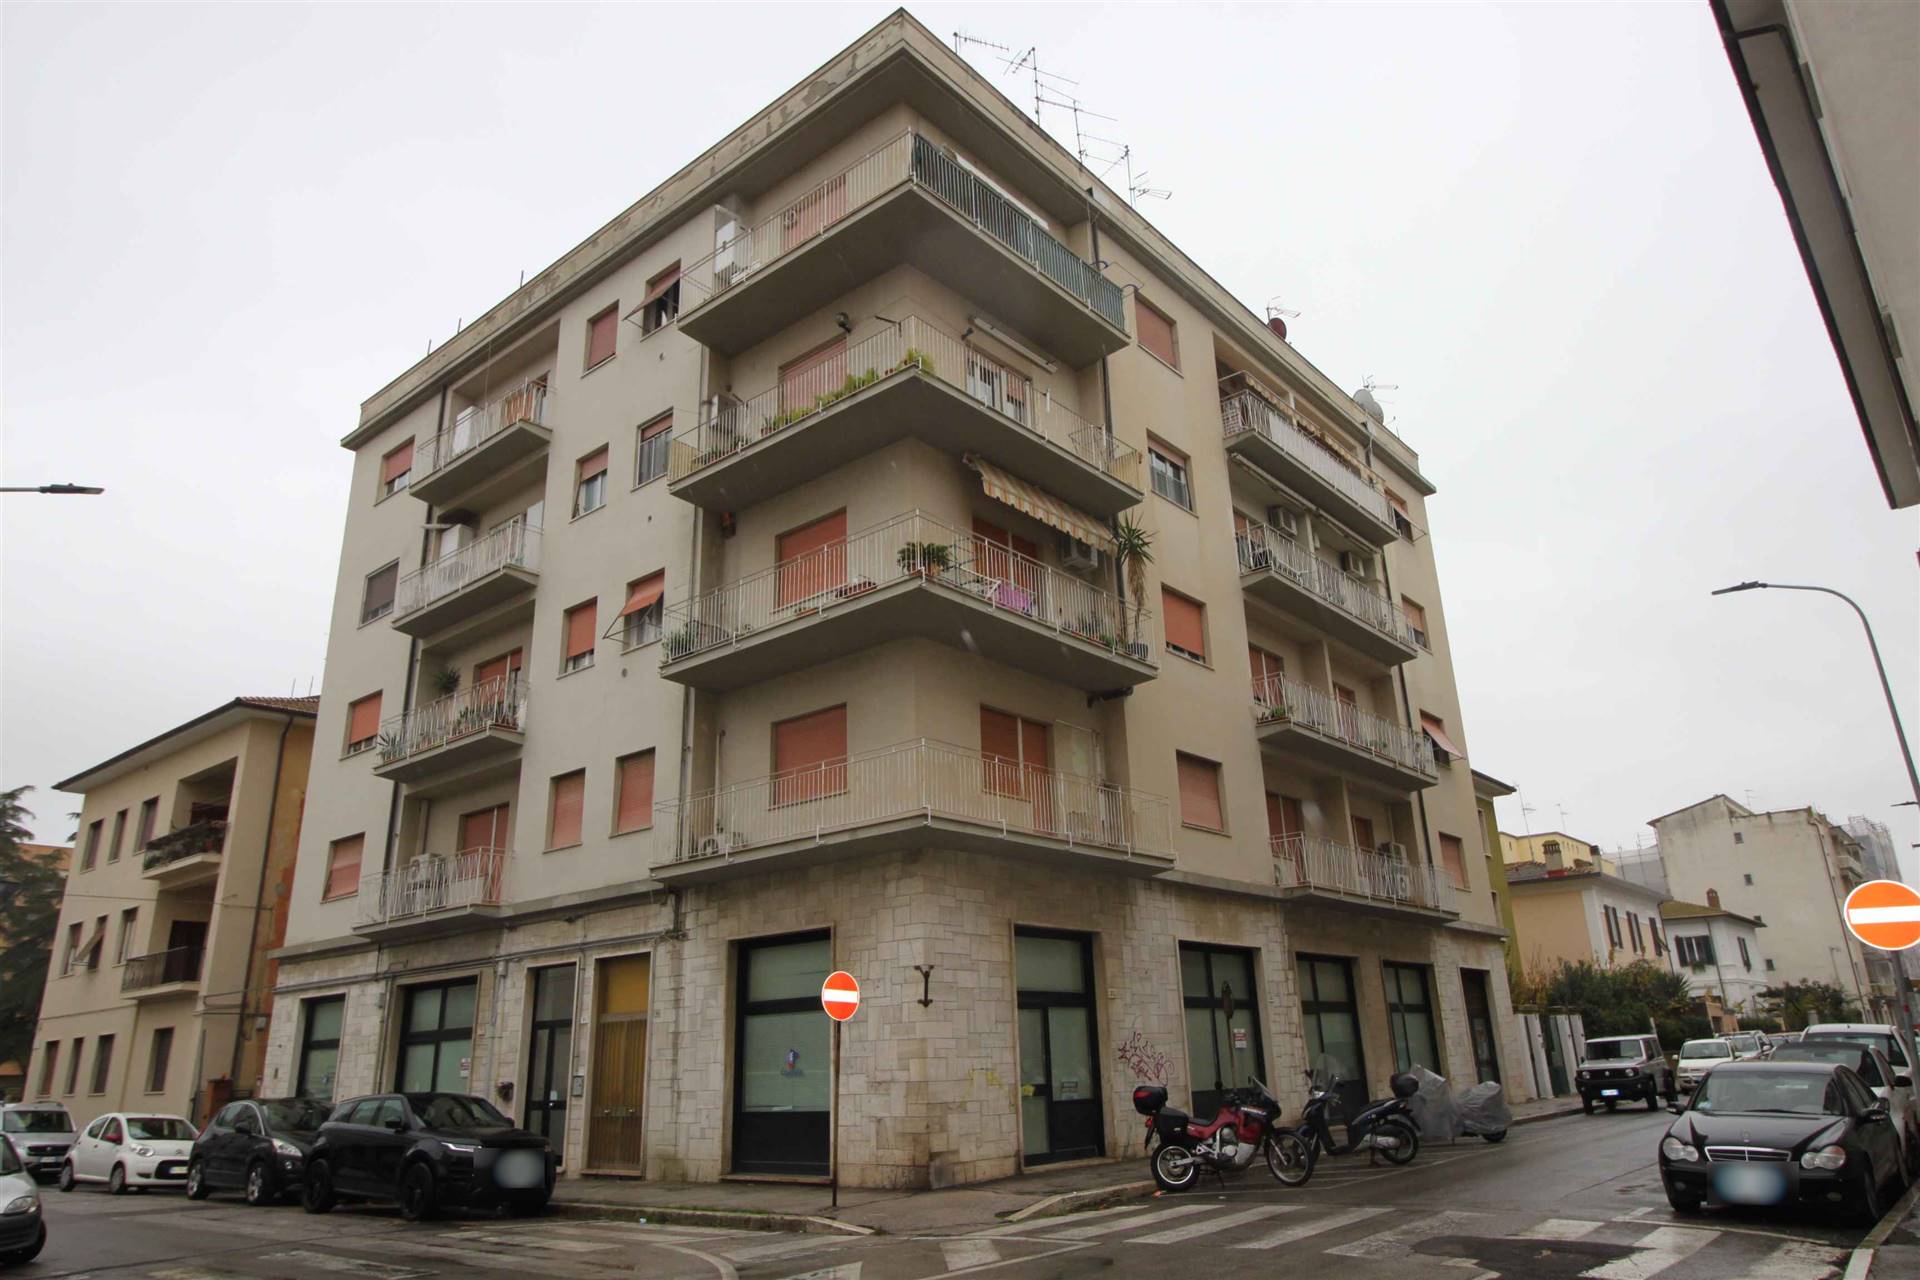 ZONA CENTRALE - Via Trento 71 Appartamento di 88 mq. in zona centrale e servita situato al piano terzo su 4 CON ascensore e attualmente composto di ingresso, soggiorno con terrazza angolare, cucina, 